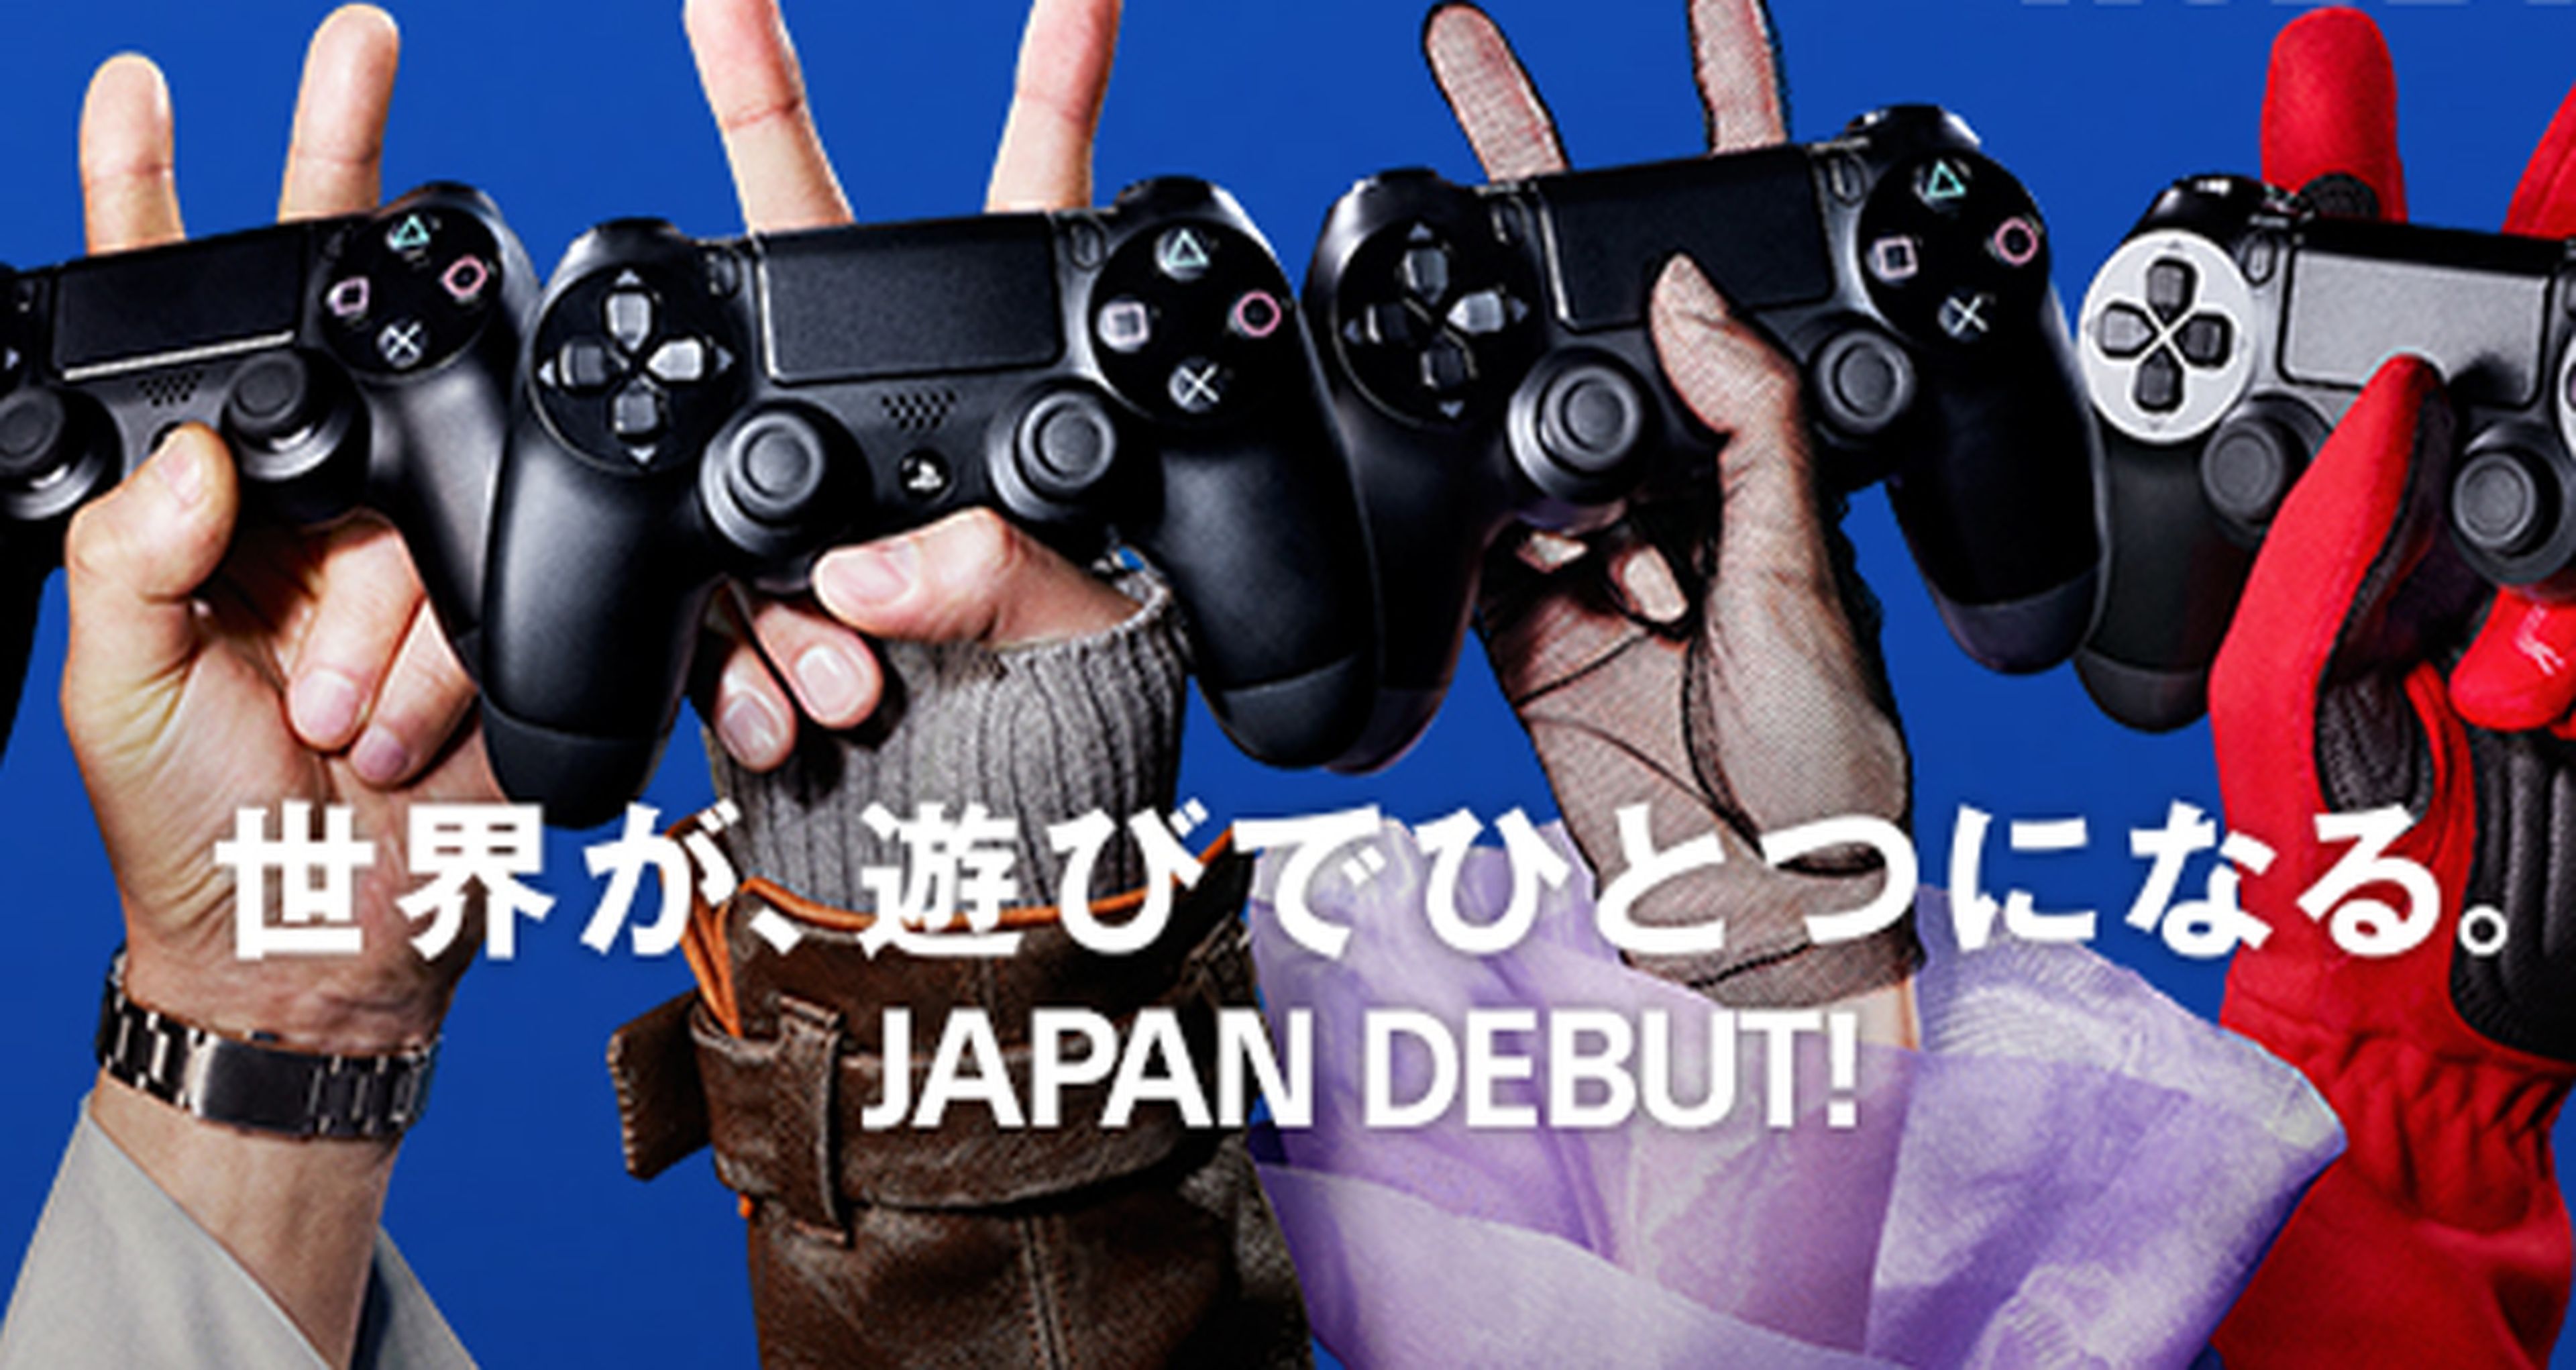 PS4 superó todas las expectativas en Japón